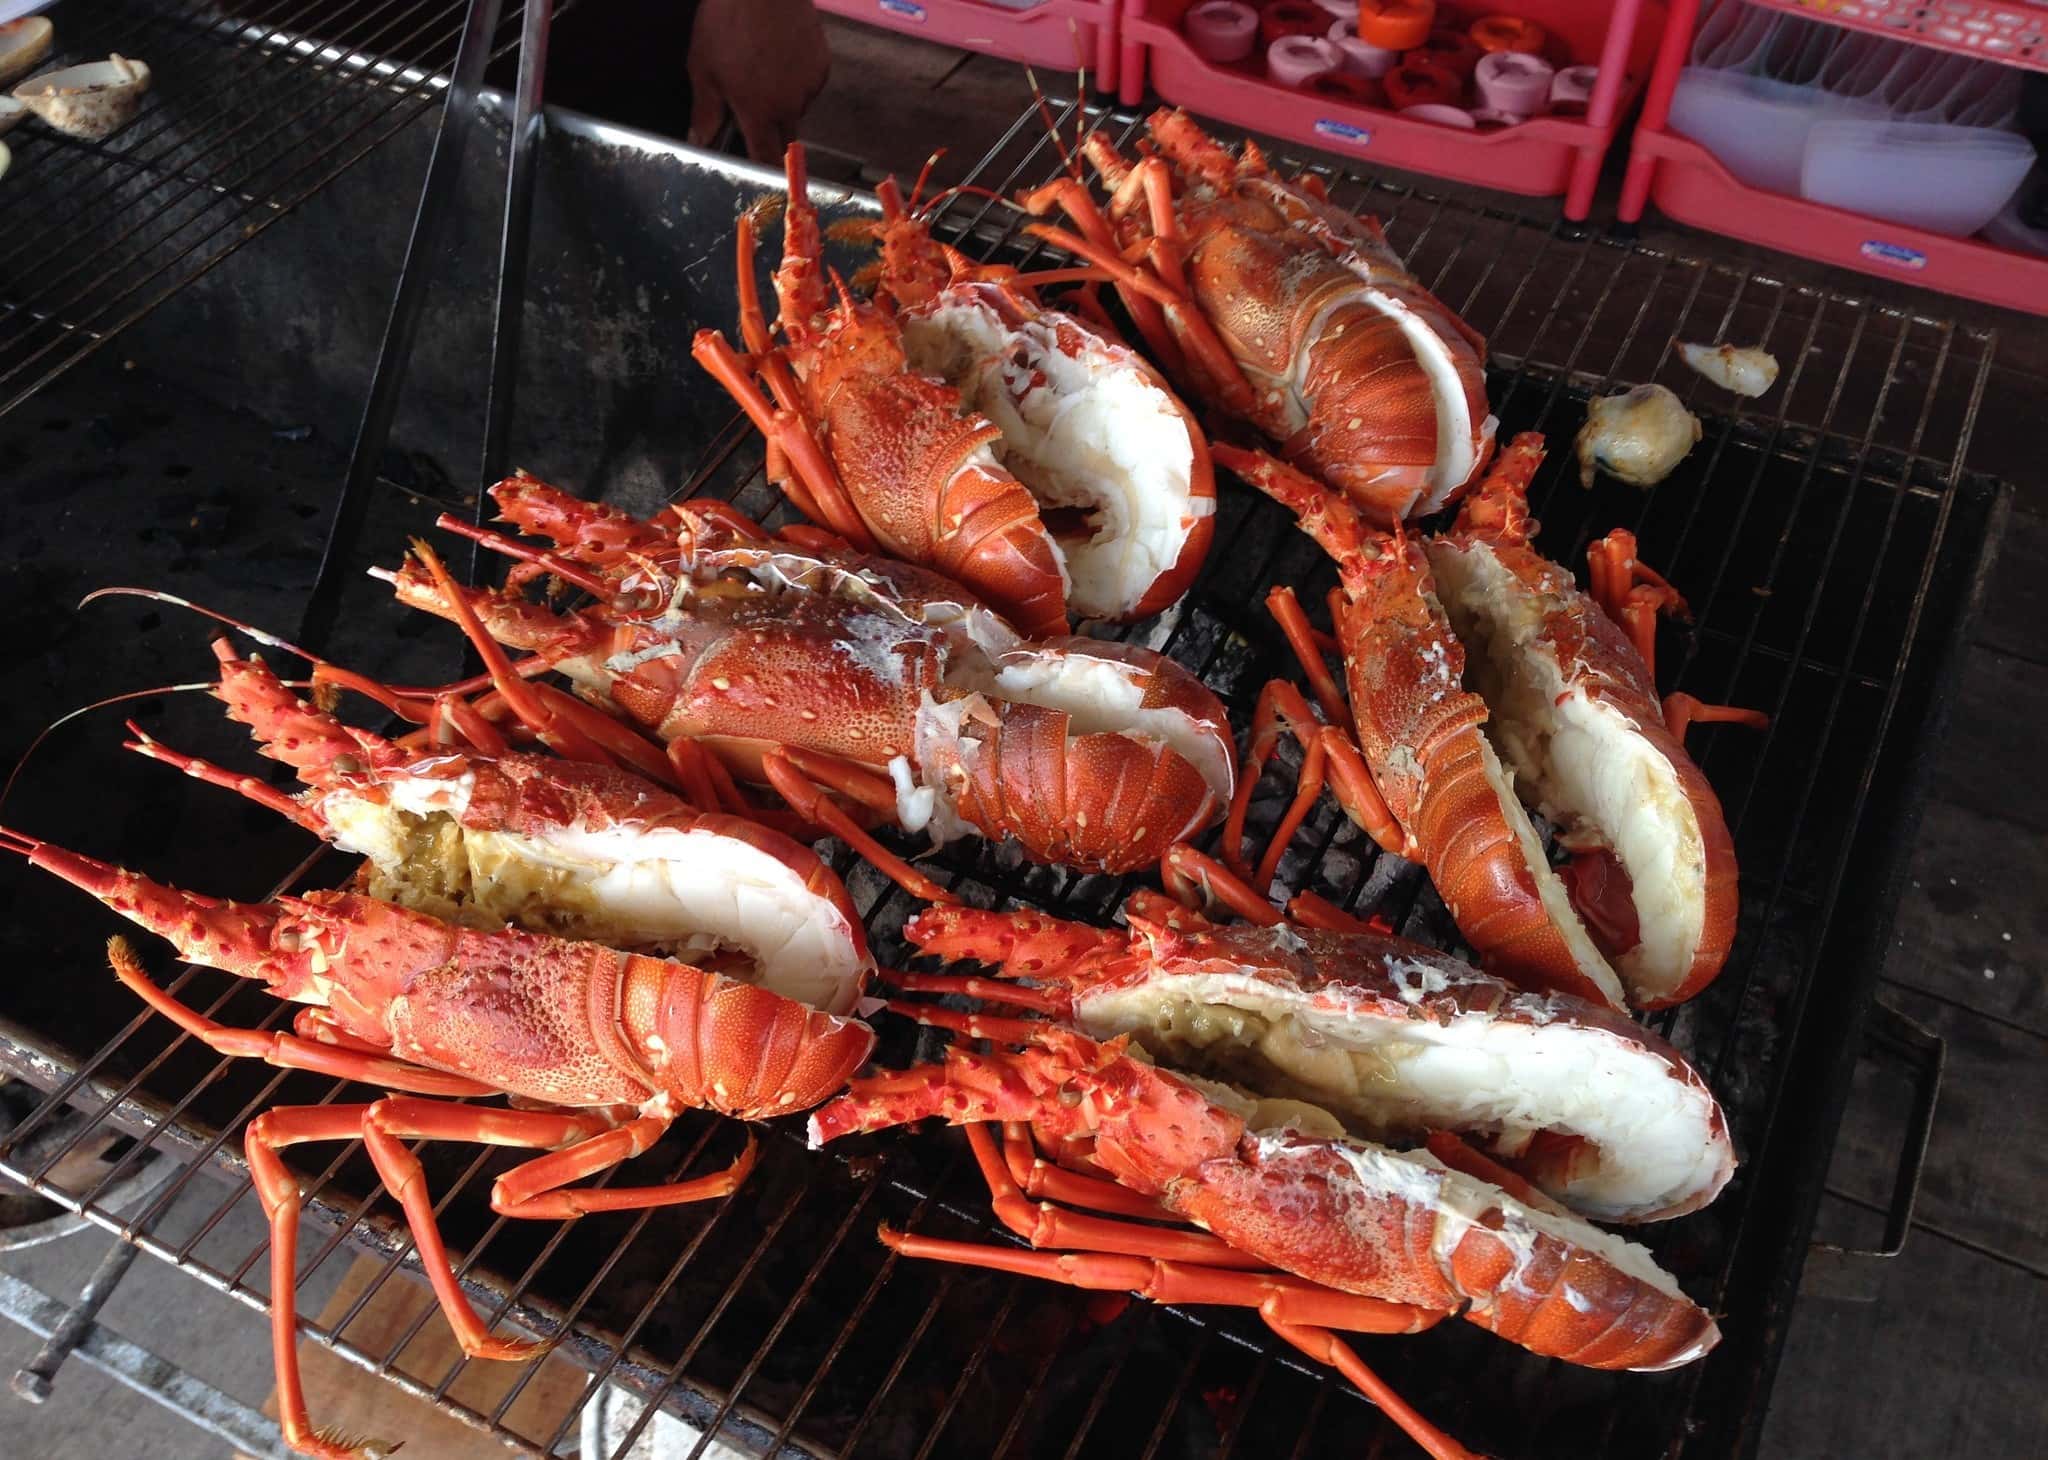 binh ba lobster - Nha Trang Highlights & Travel Guide 2022